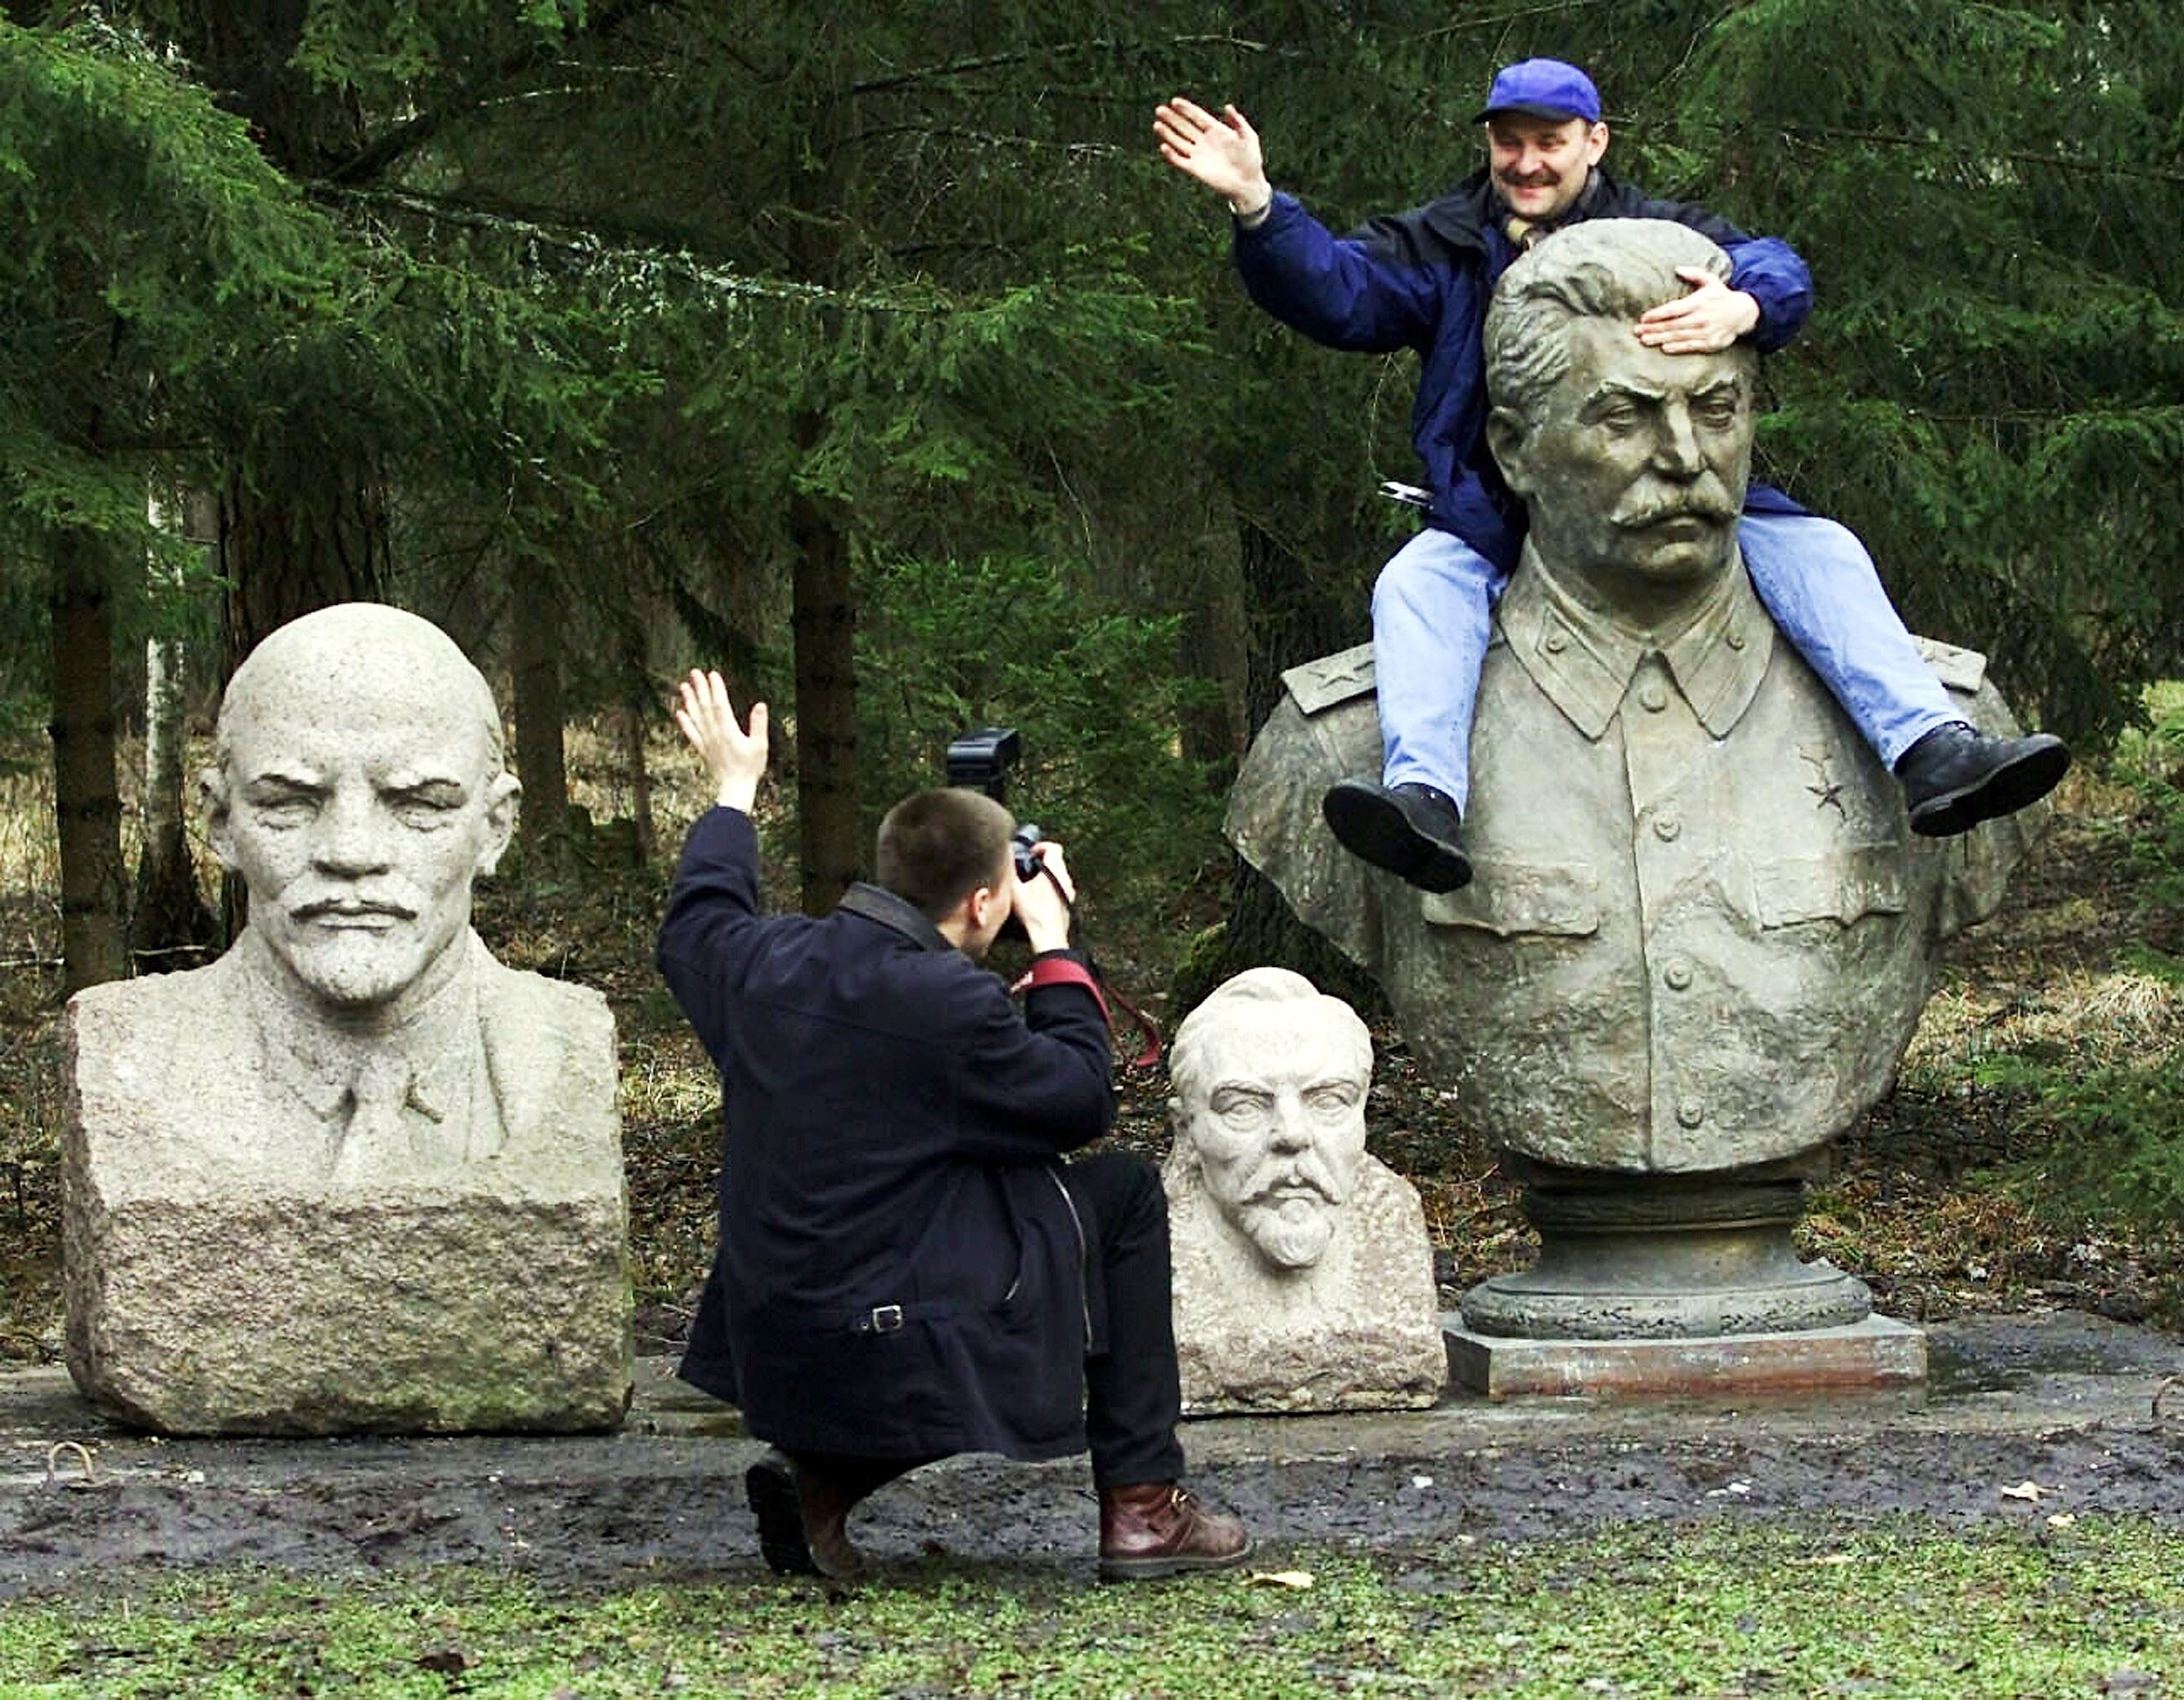 Soviet Sculpture Garden